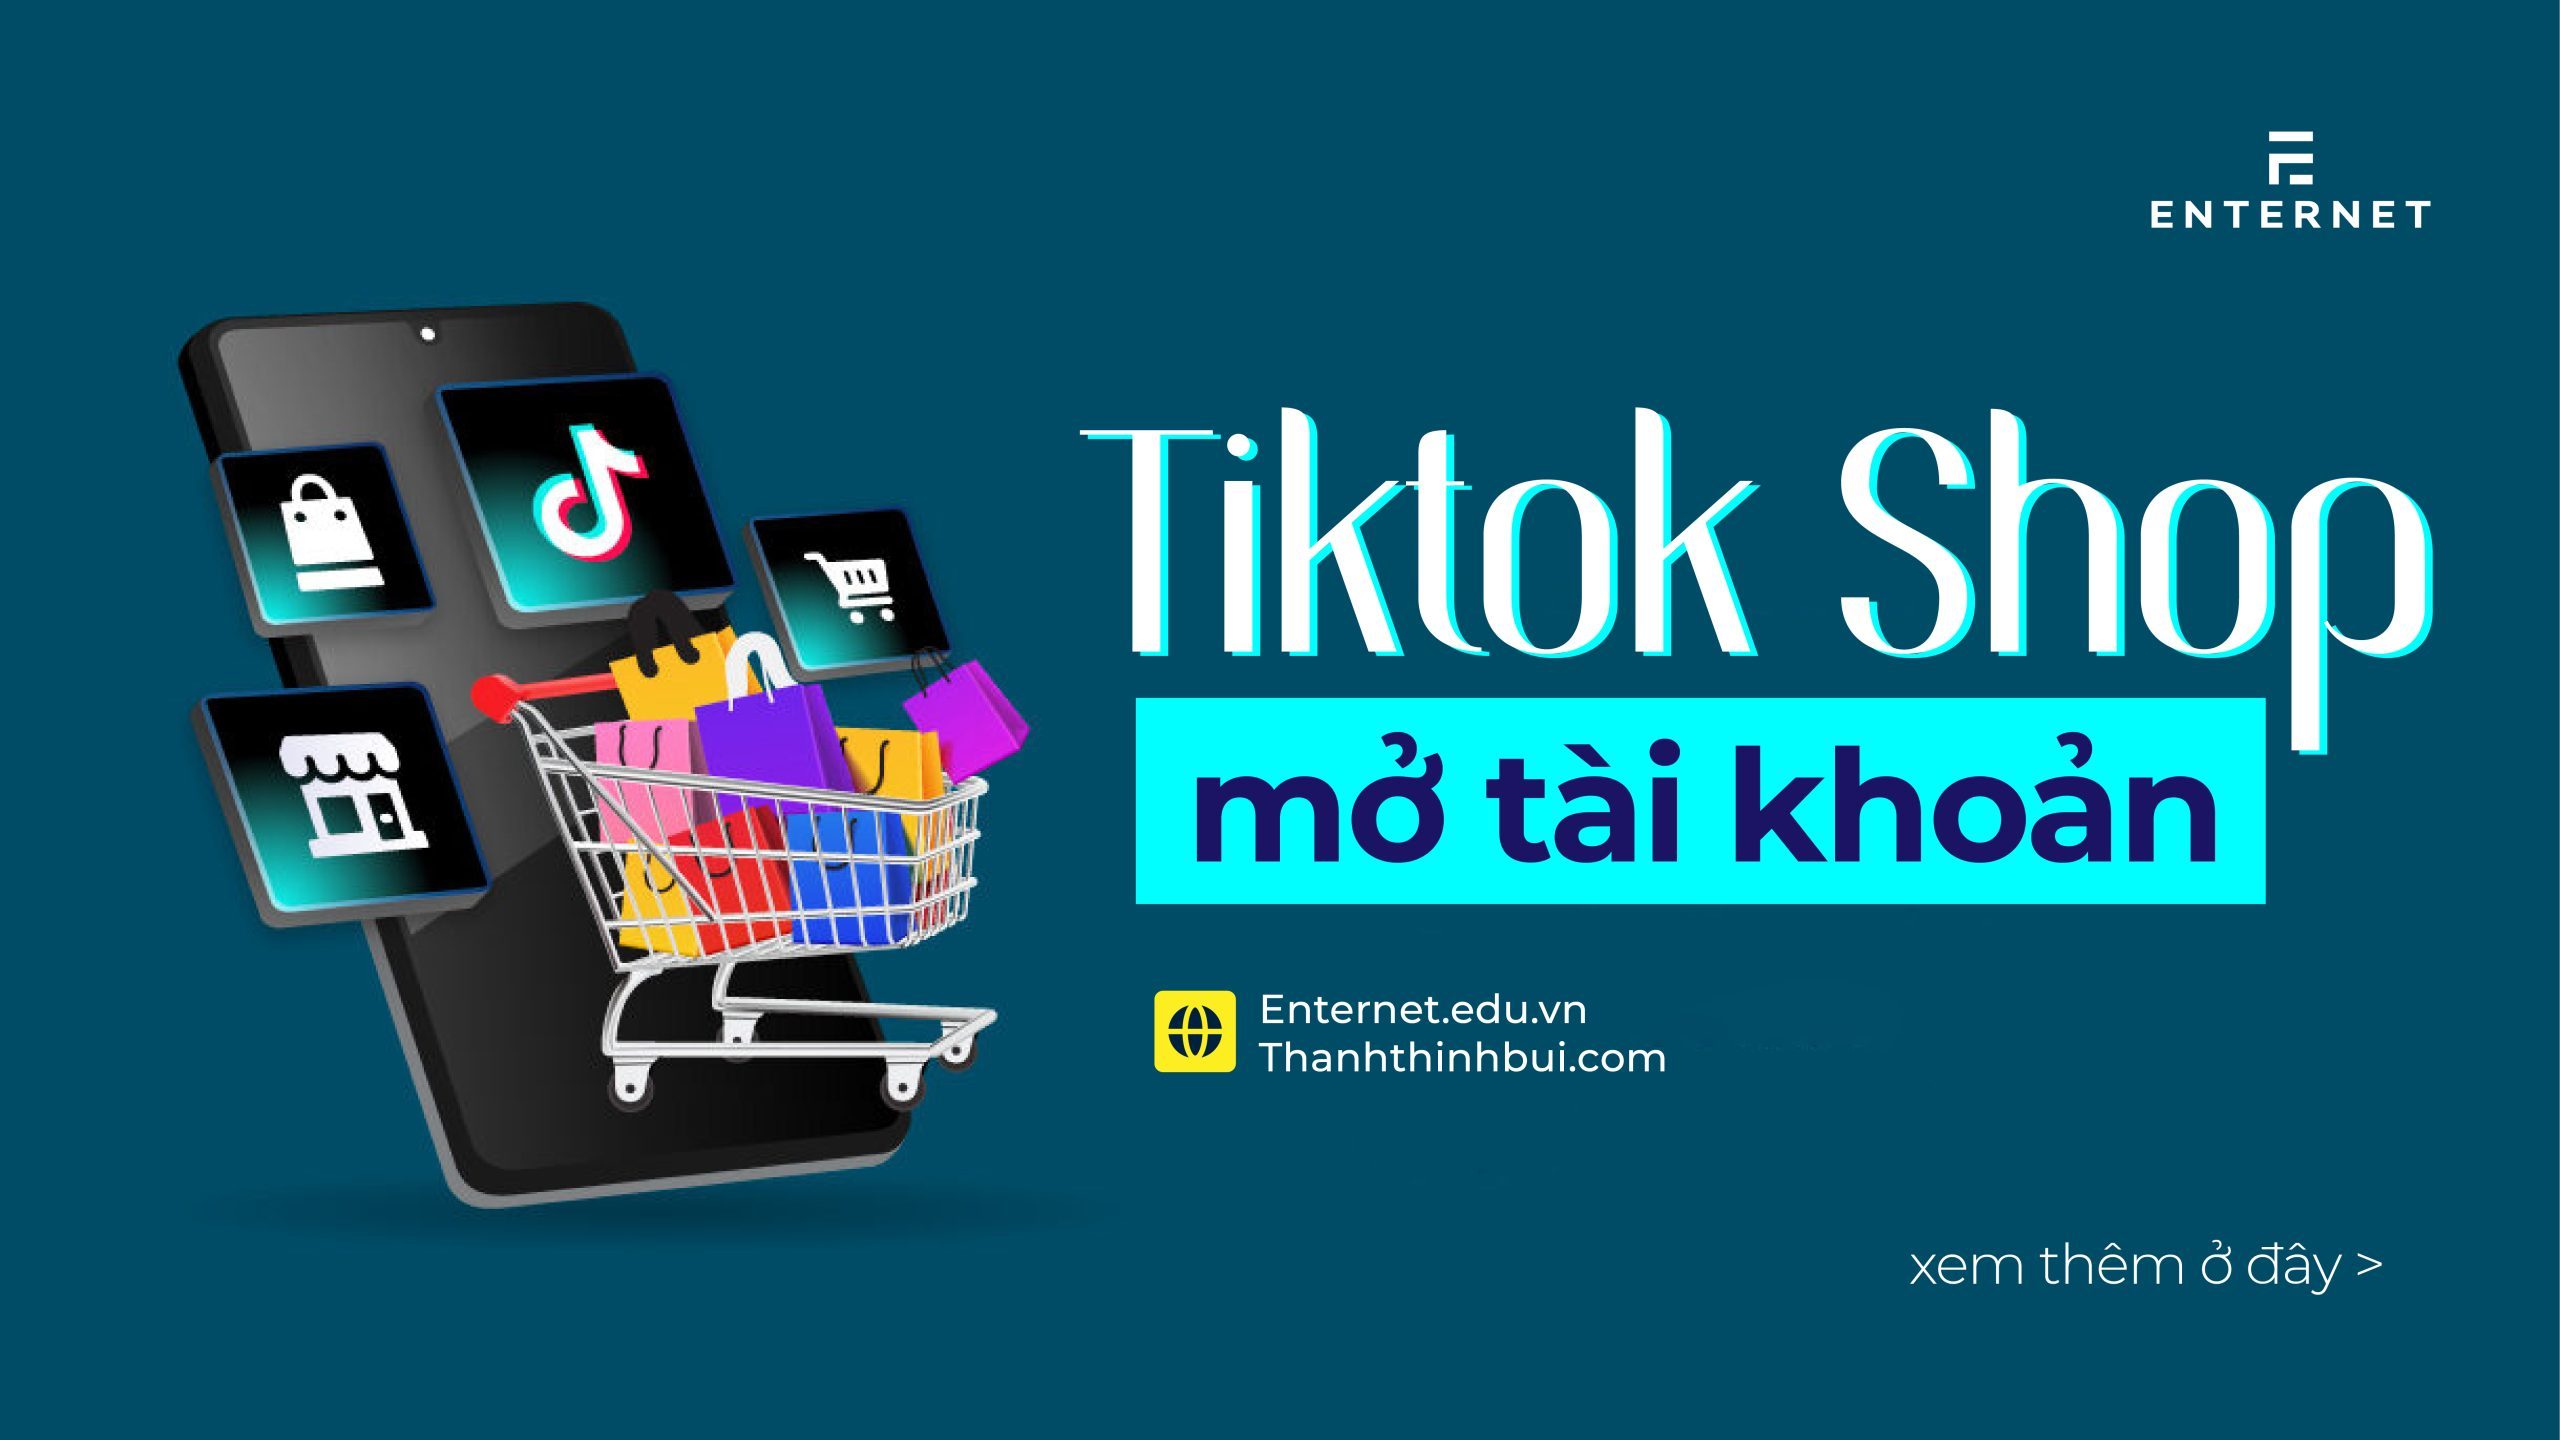 Tiktok Shop là gì? Mở gian hàng Tiktok Shop cực đơn giản 2022 